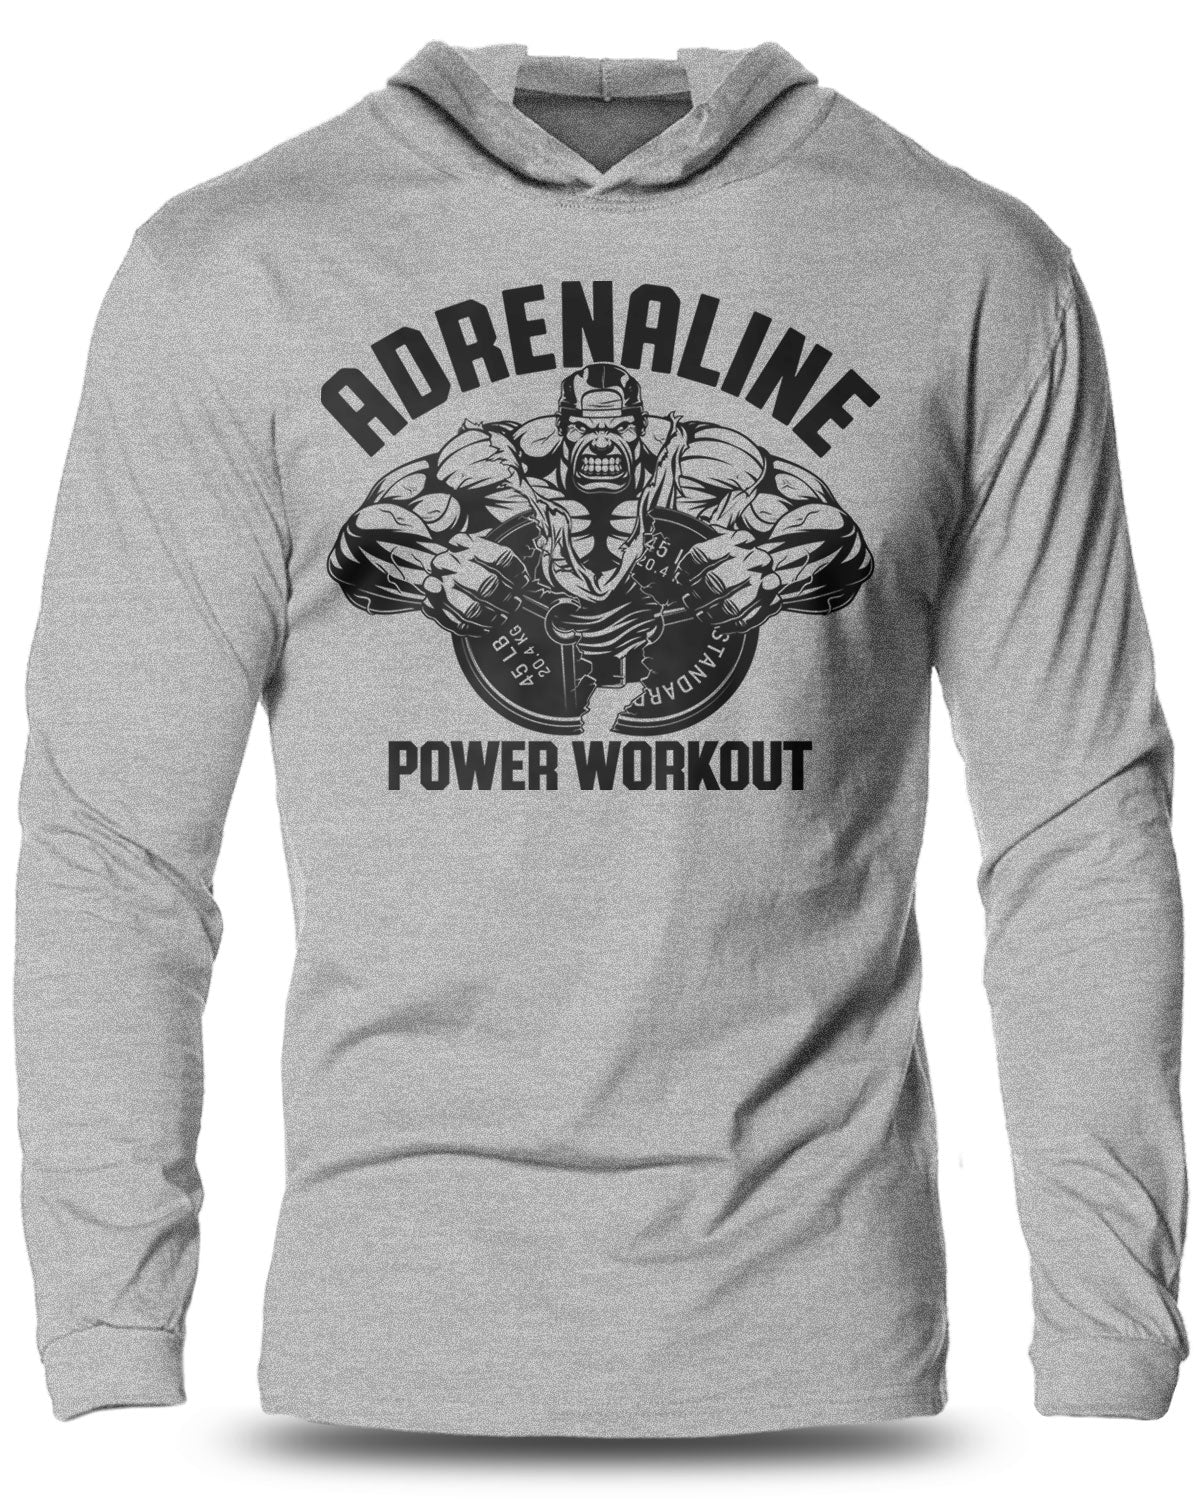 020-Adrenaline Lightweight Long Sleeve Hooded T-shirt for Men